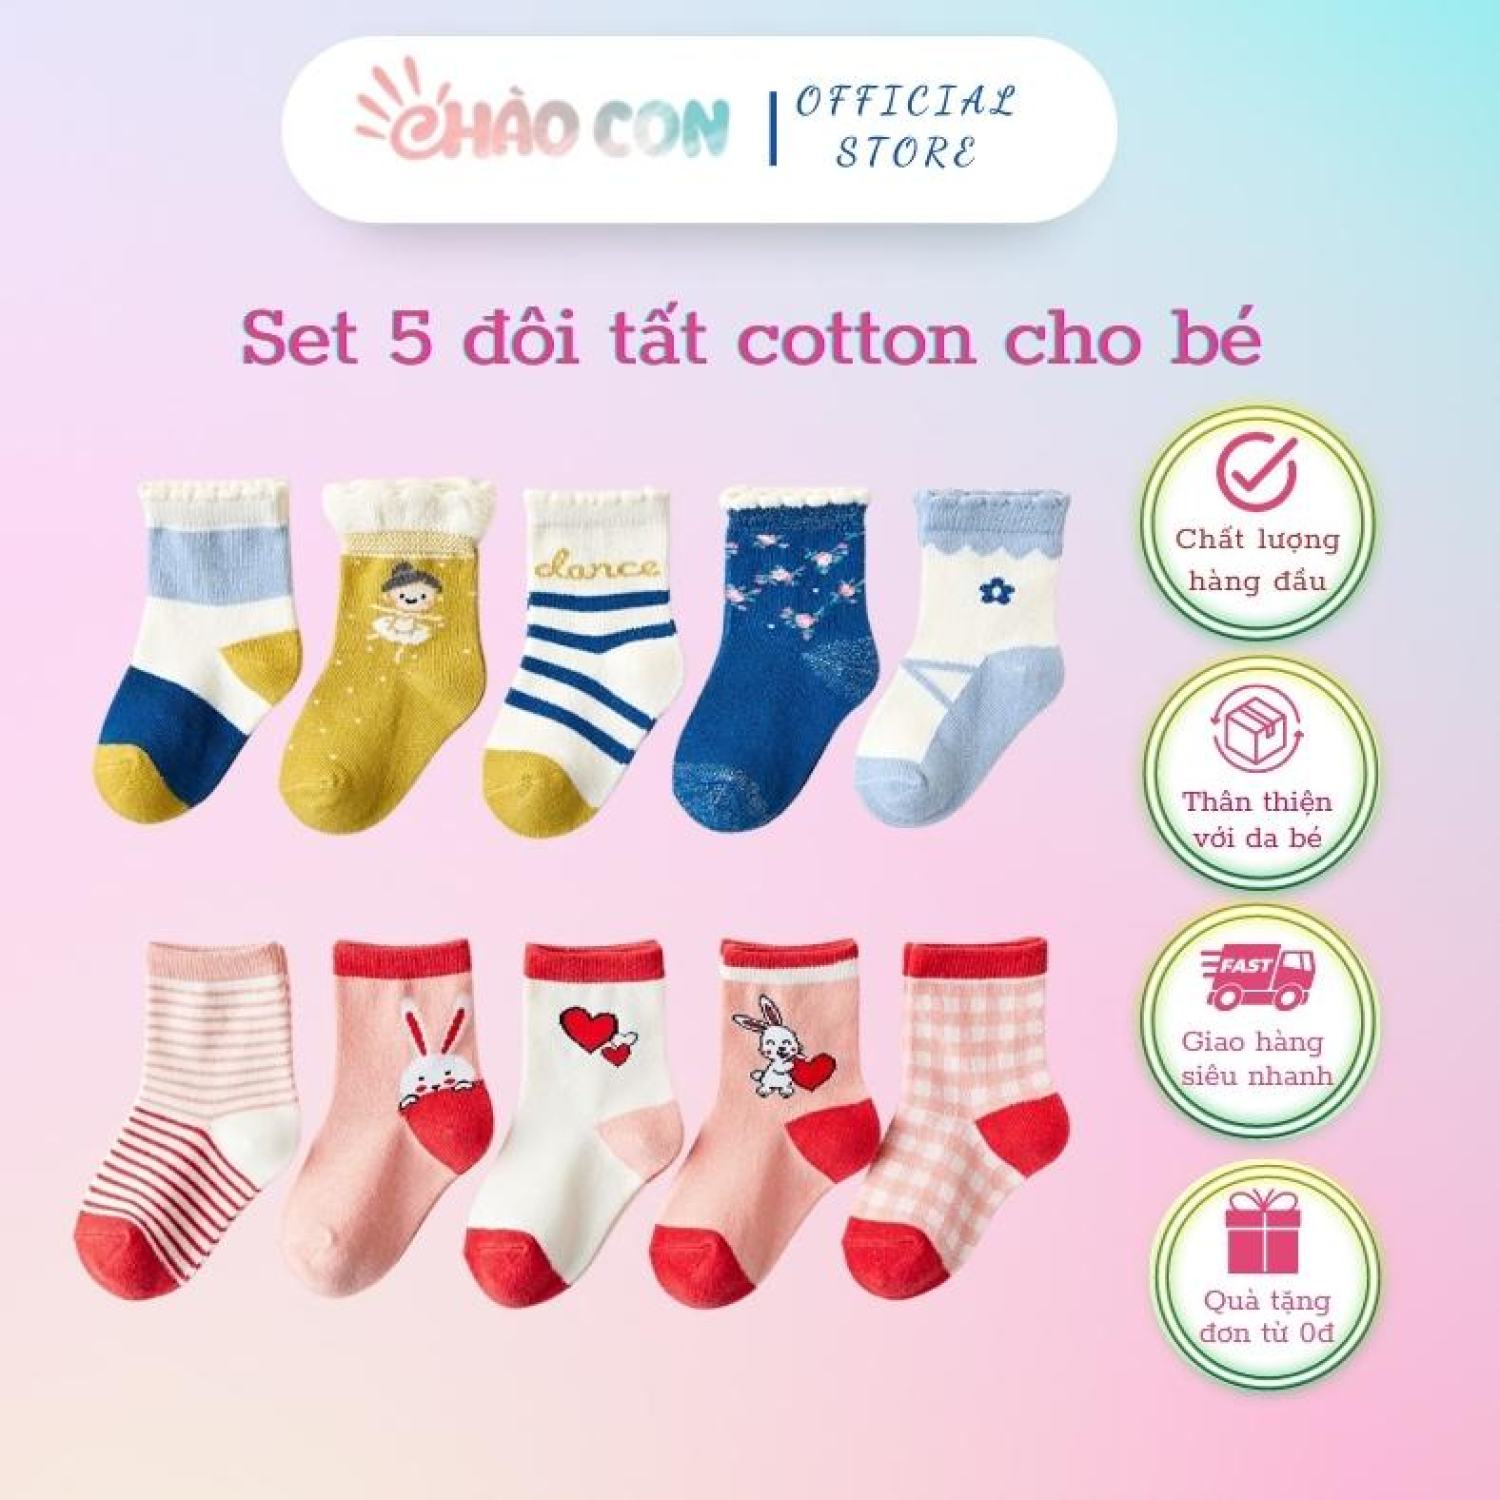 Chào Con- Set 5 đôi tất chất liệu cotton dành cho bé từ 1-5 tuổi.